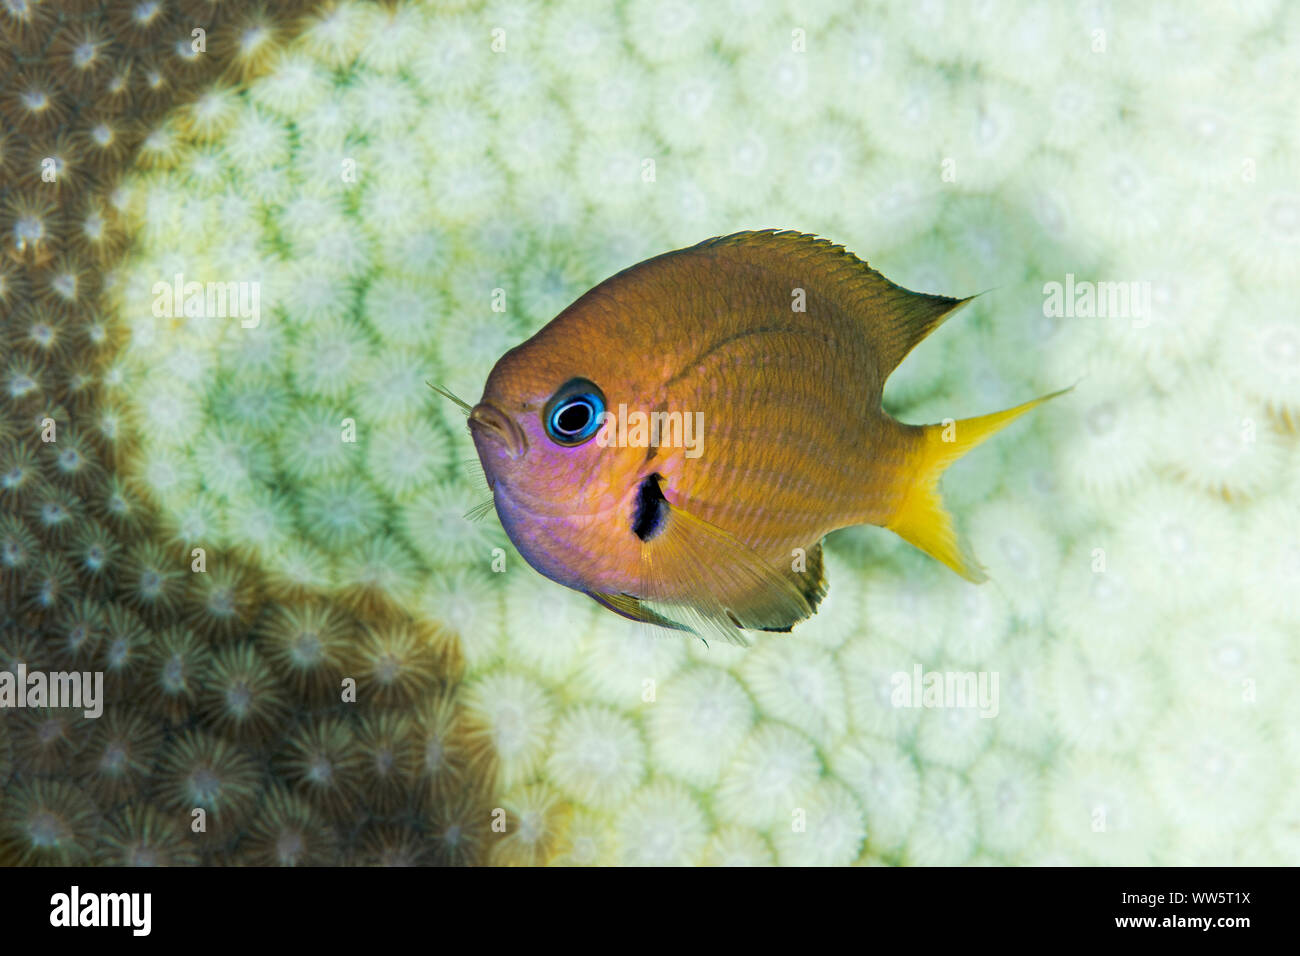 Le changement climatique, de petits poissons, des coraux, de l'Océan Pacifique Banque D'Images